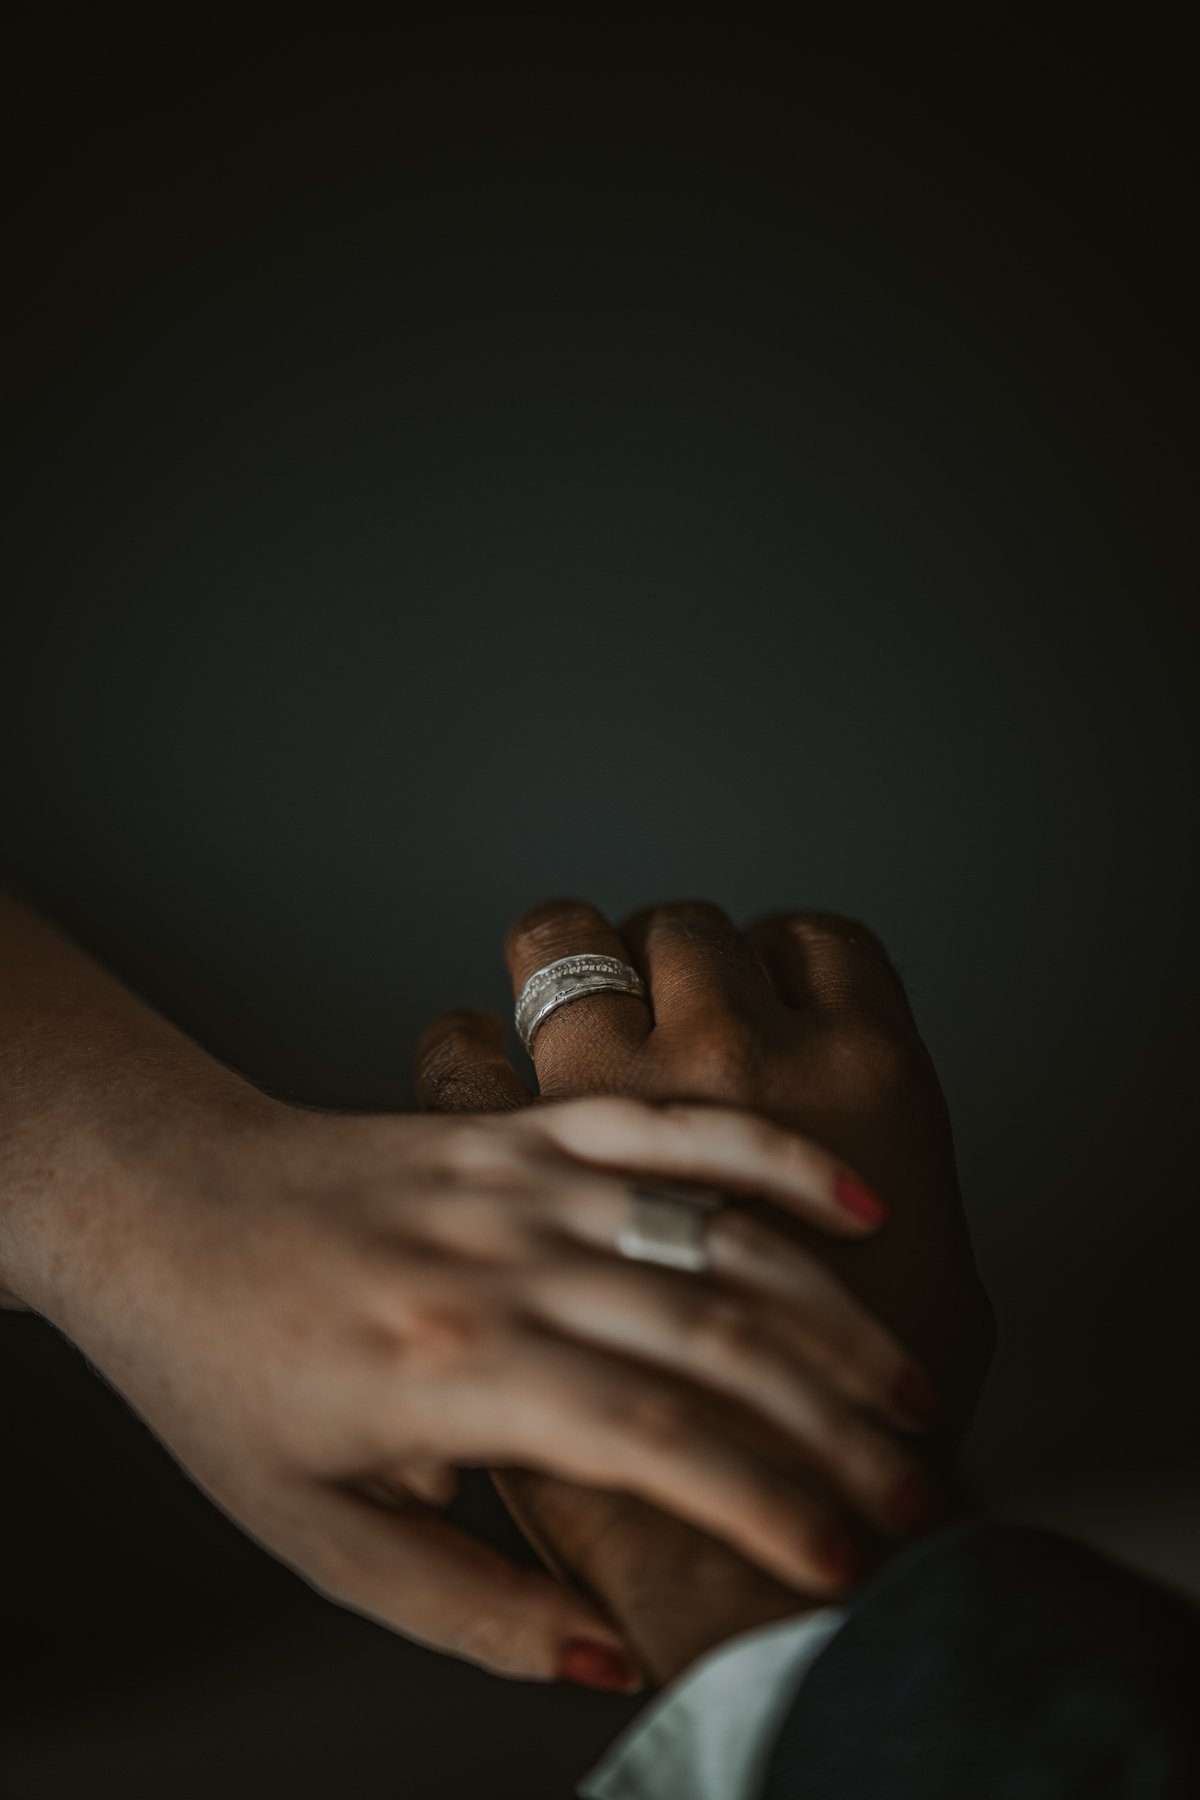 wedding-rings-catherinemarche.jpg